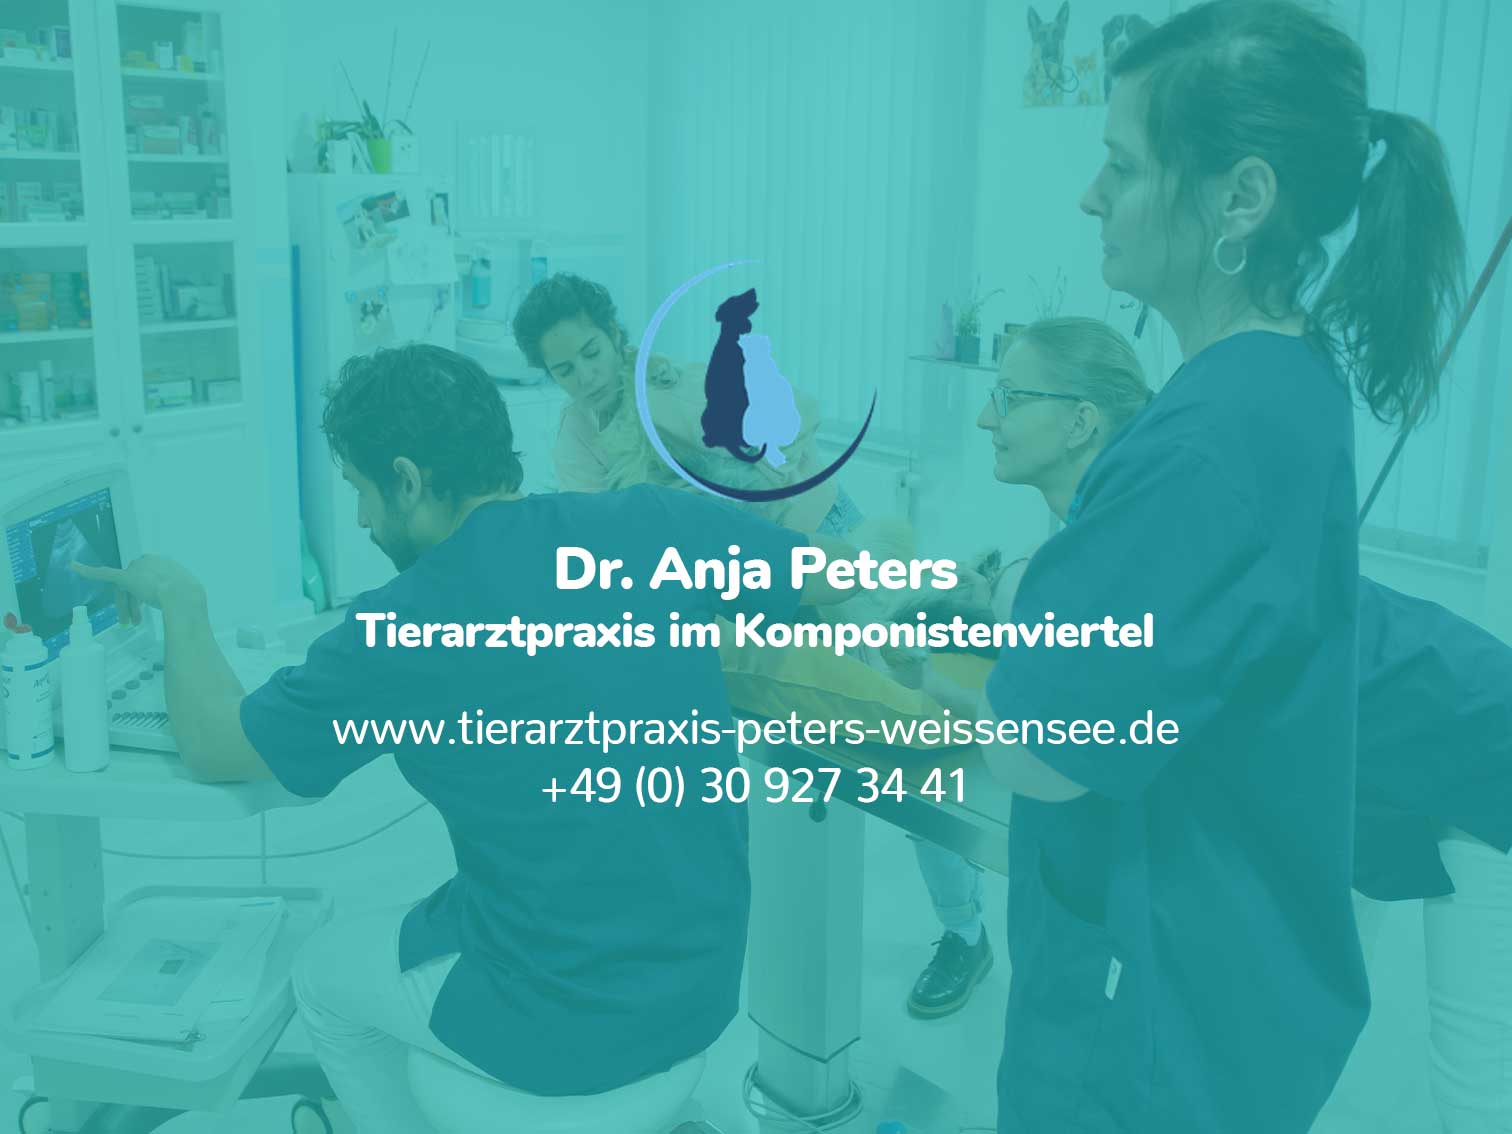 (c) Tierarztpraxis-peters-weissensee.de